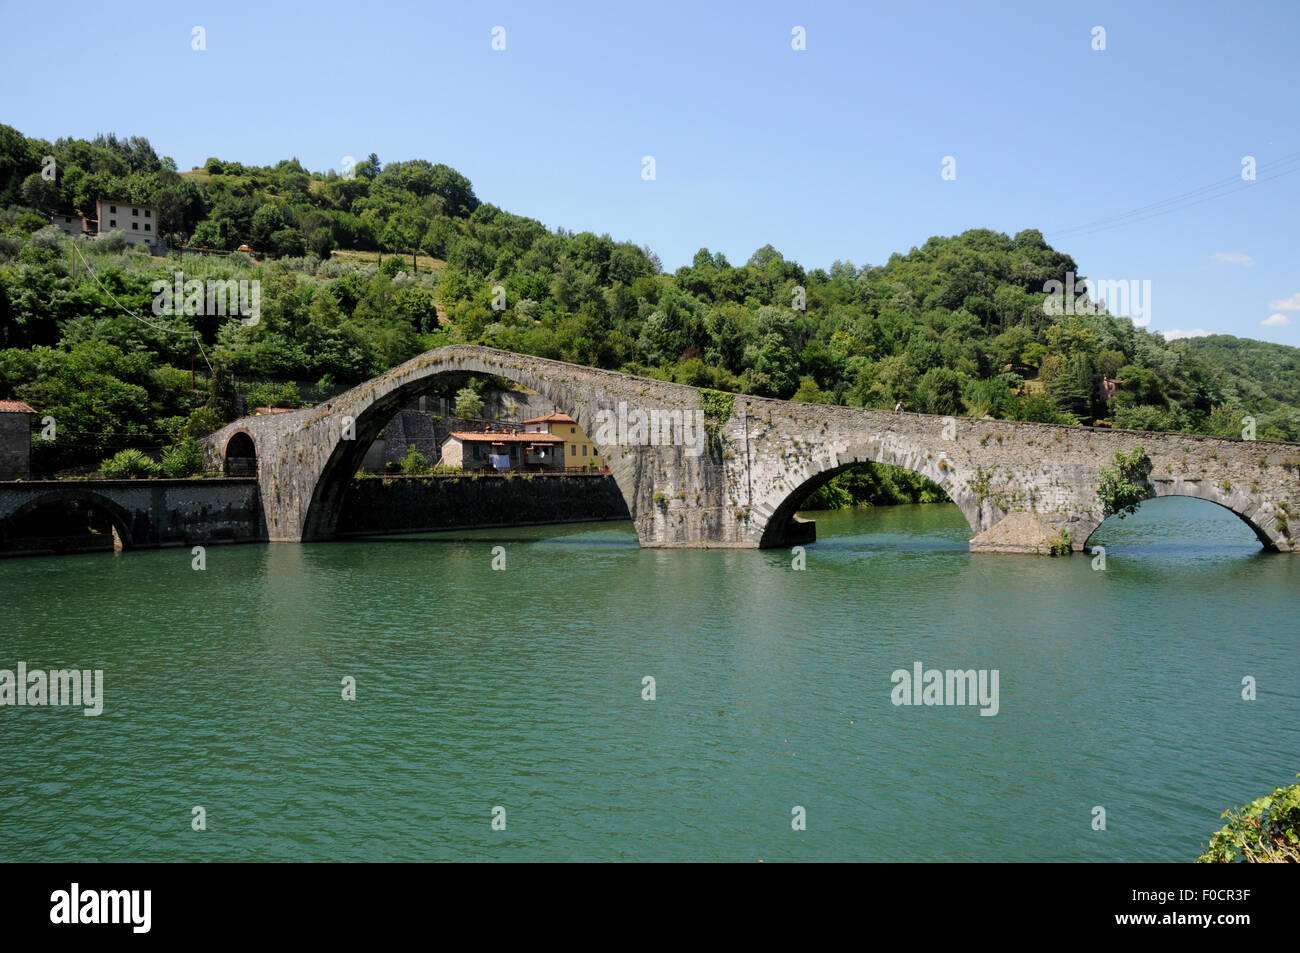 The medieval Ponte della Madalena, or Devil's Bridge,over the river Serchio a Borgo a Mazzano, near Bagni de Lucca, Tuscany. Stock Photo